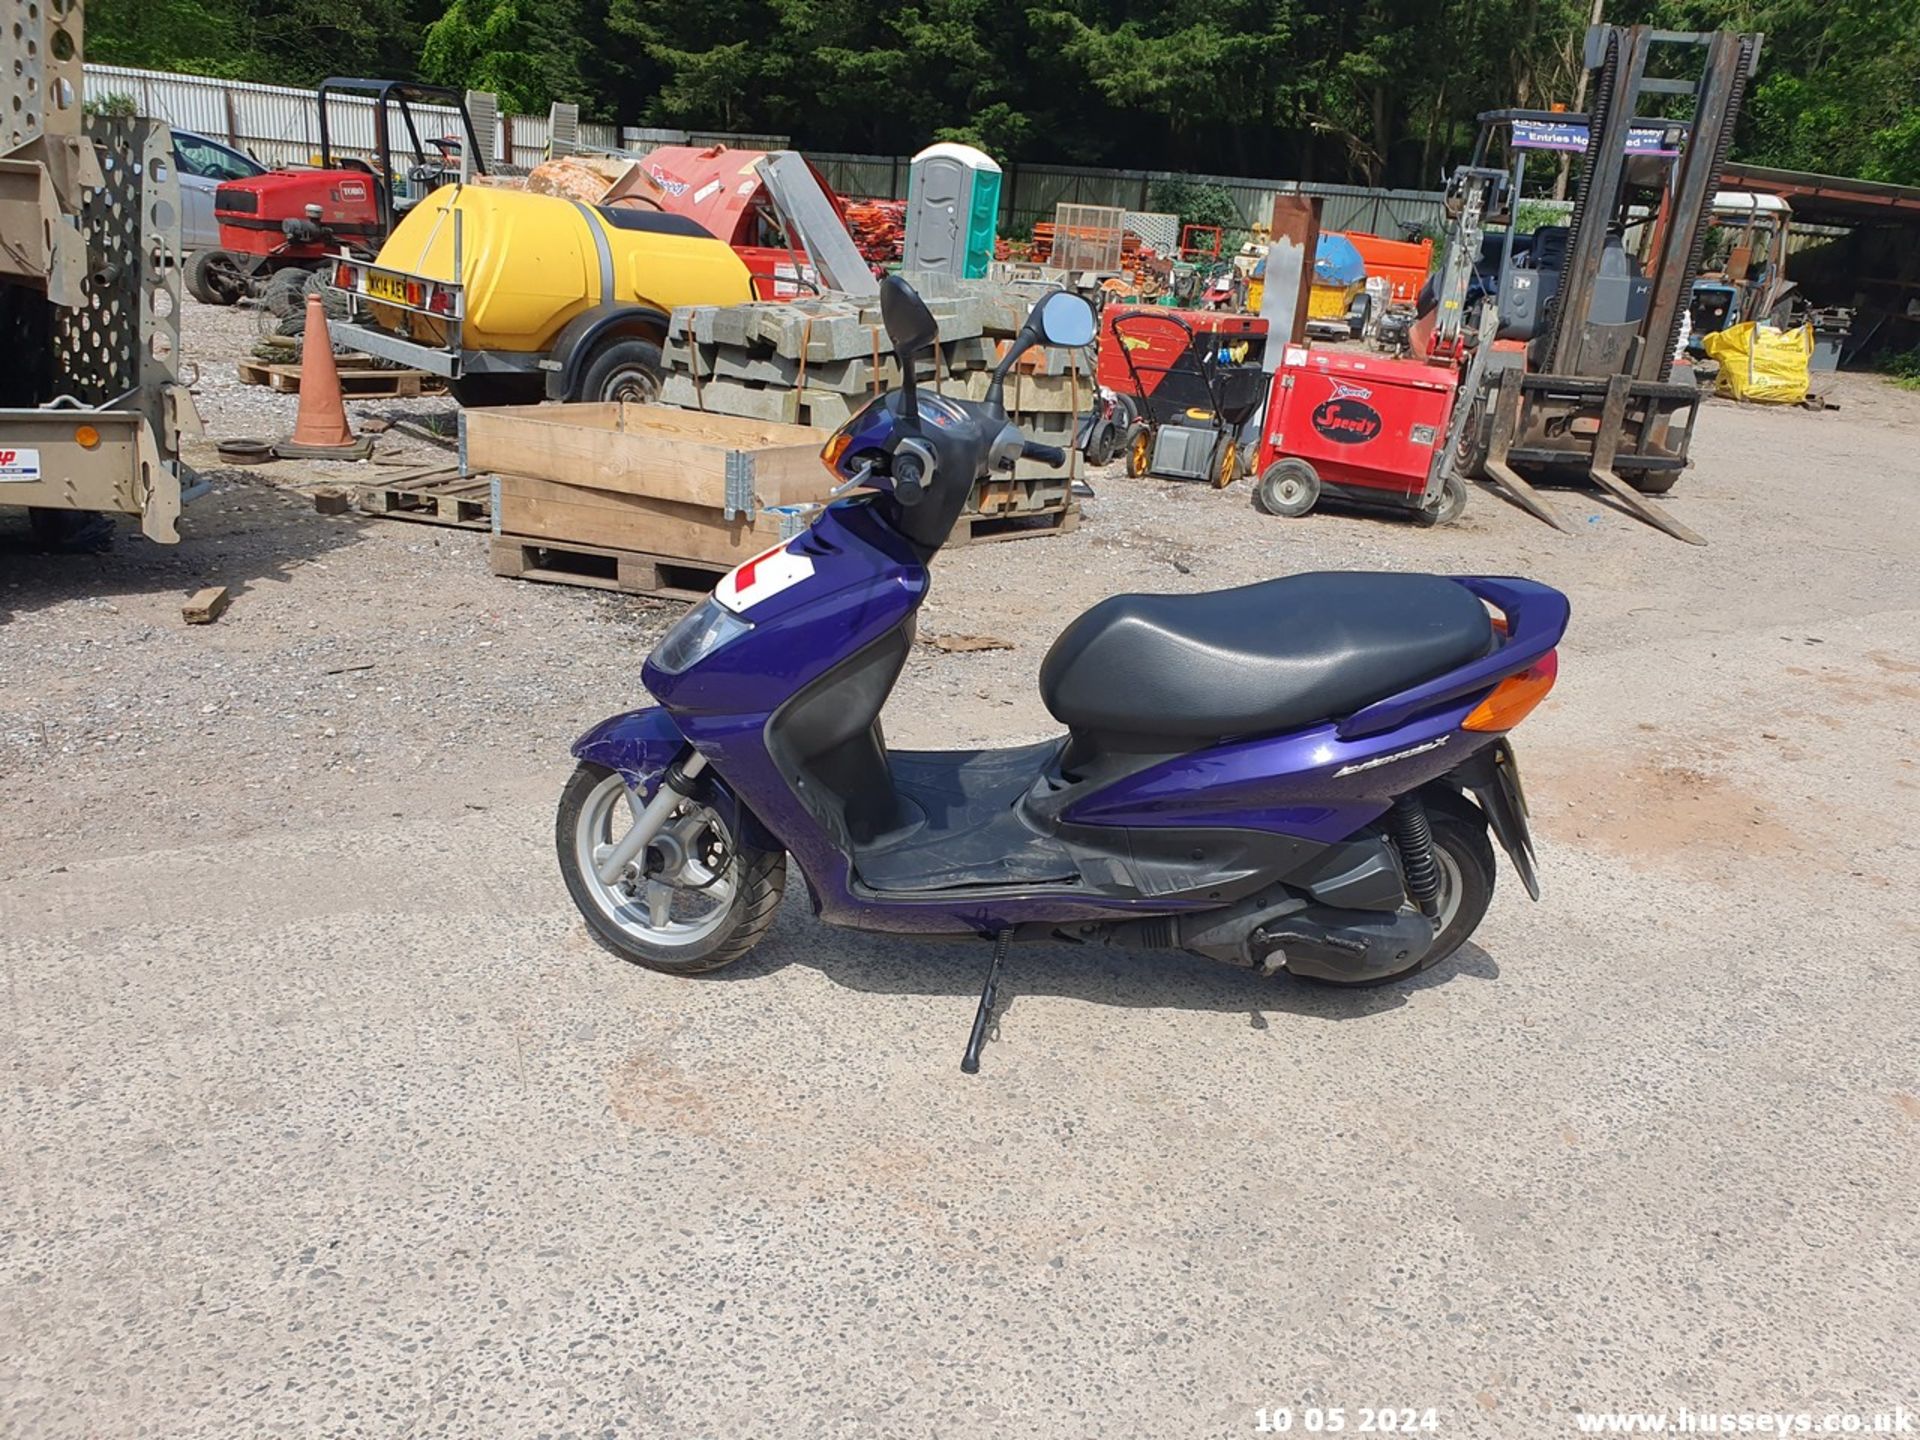 05/54 YAMAHA NXC 125 CYGNUS - 124cc Motorcycle (Blue, 18k) - Image 5 of 19